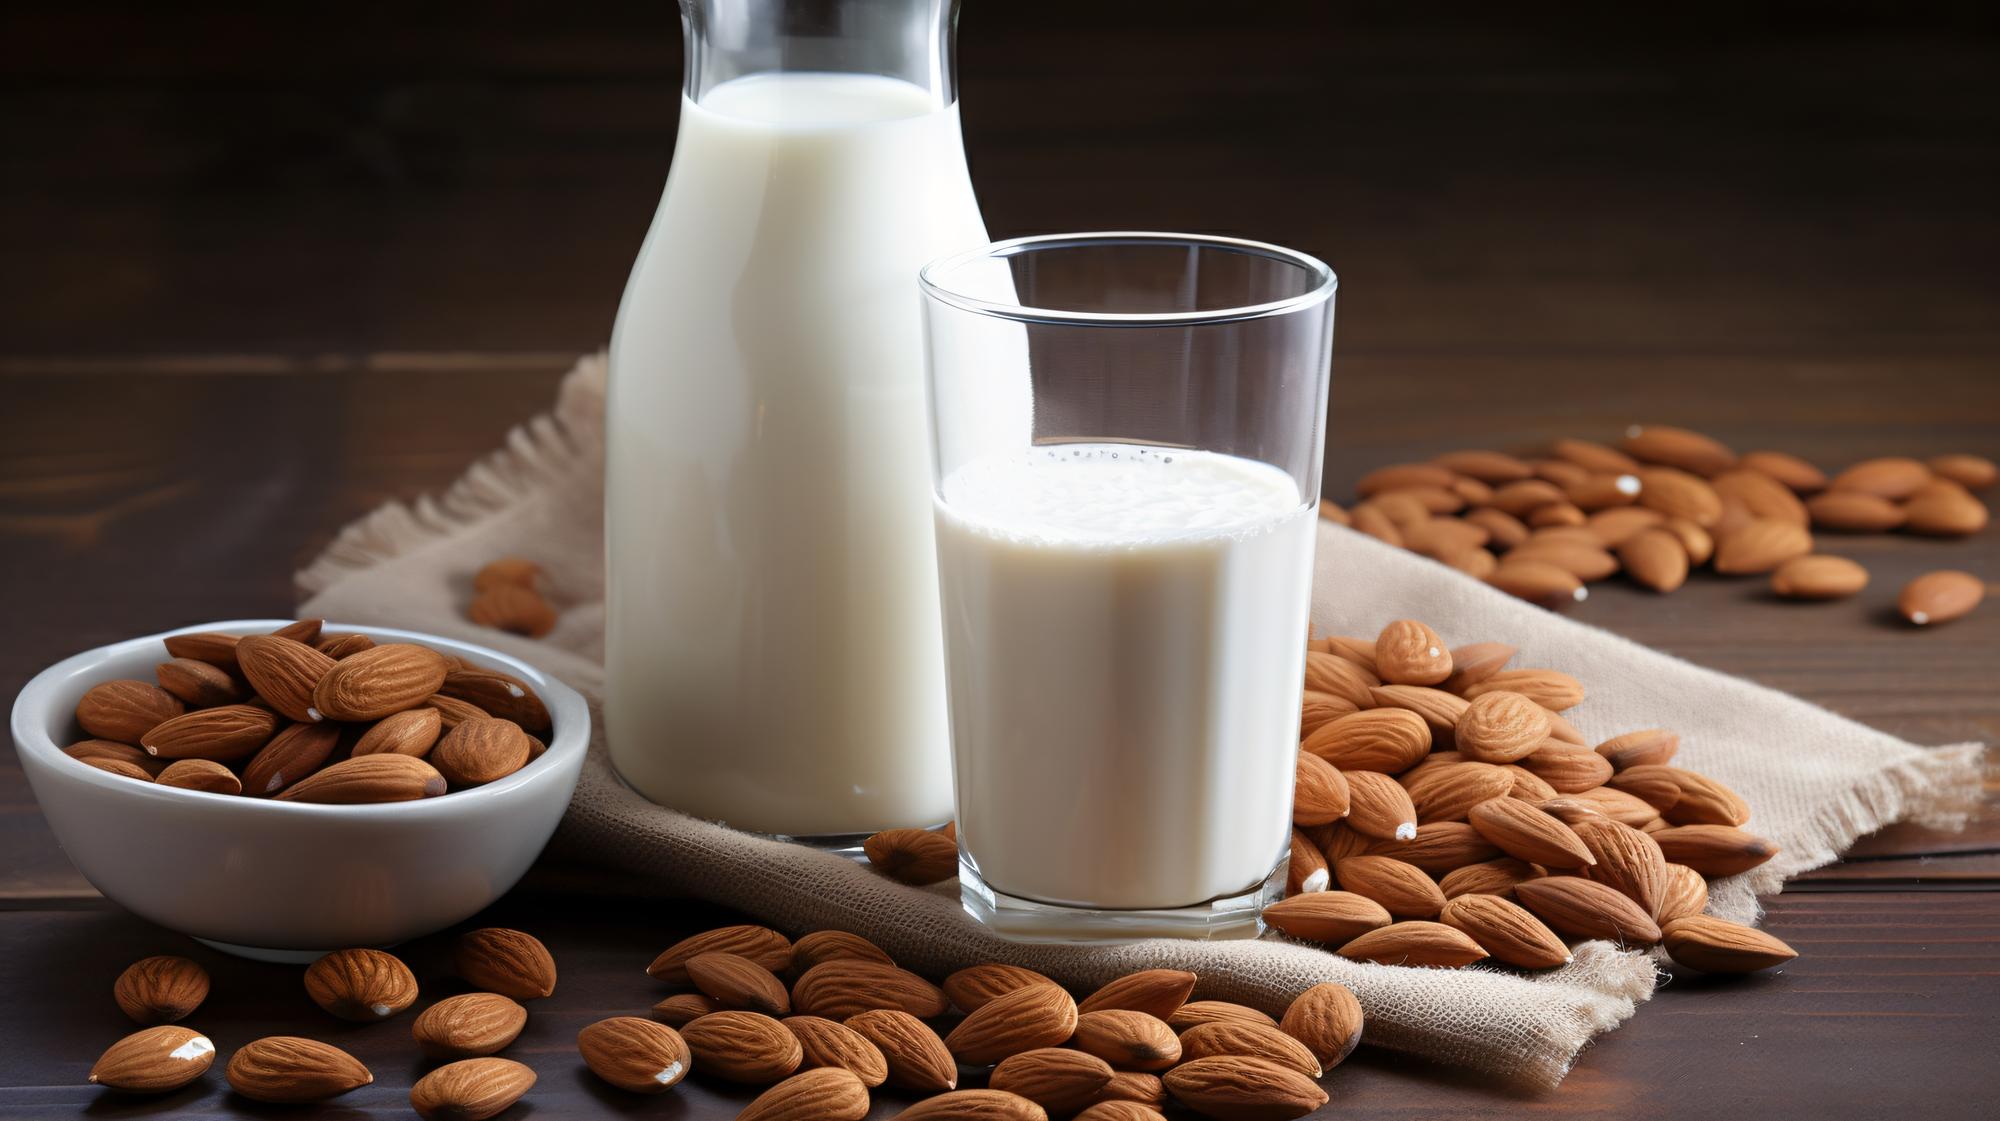 Producto vegano de leche no láctea, leche de almendra y nueces